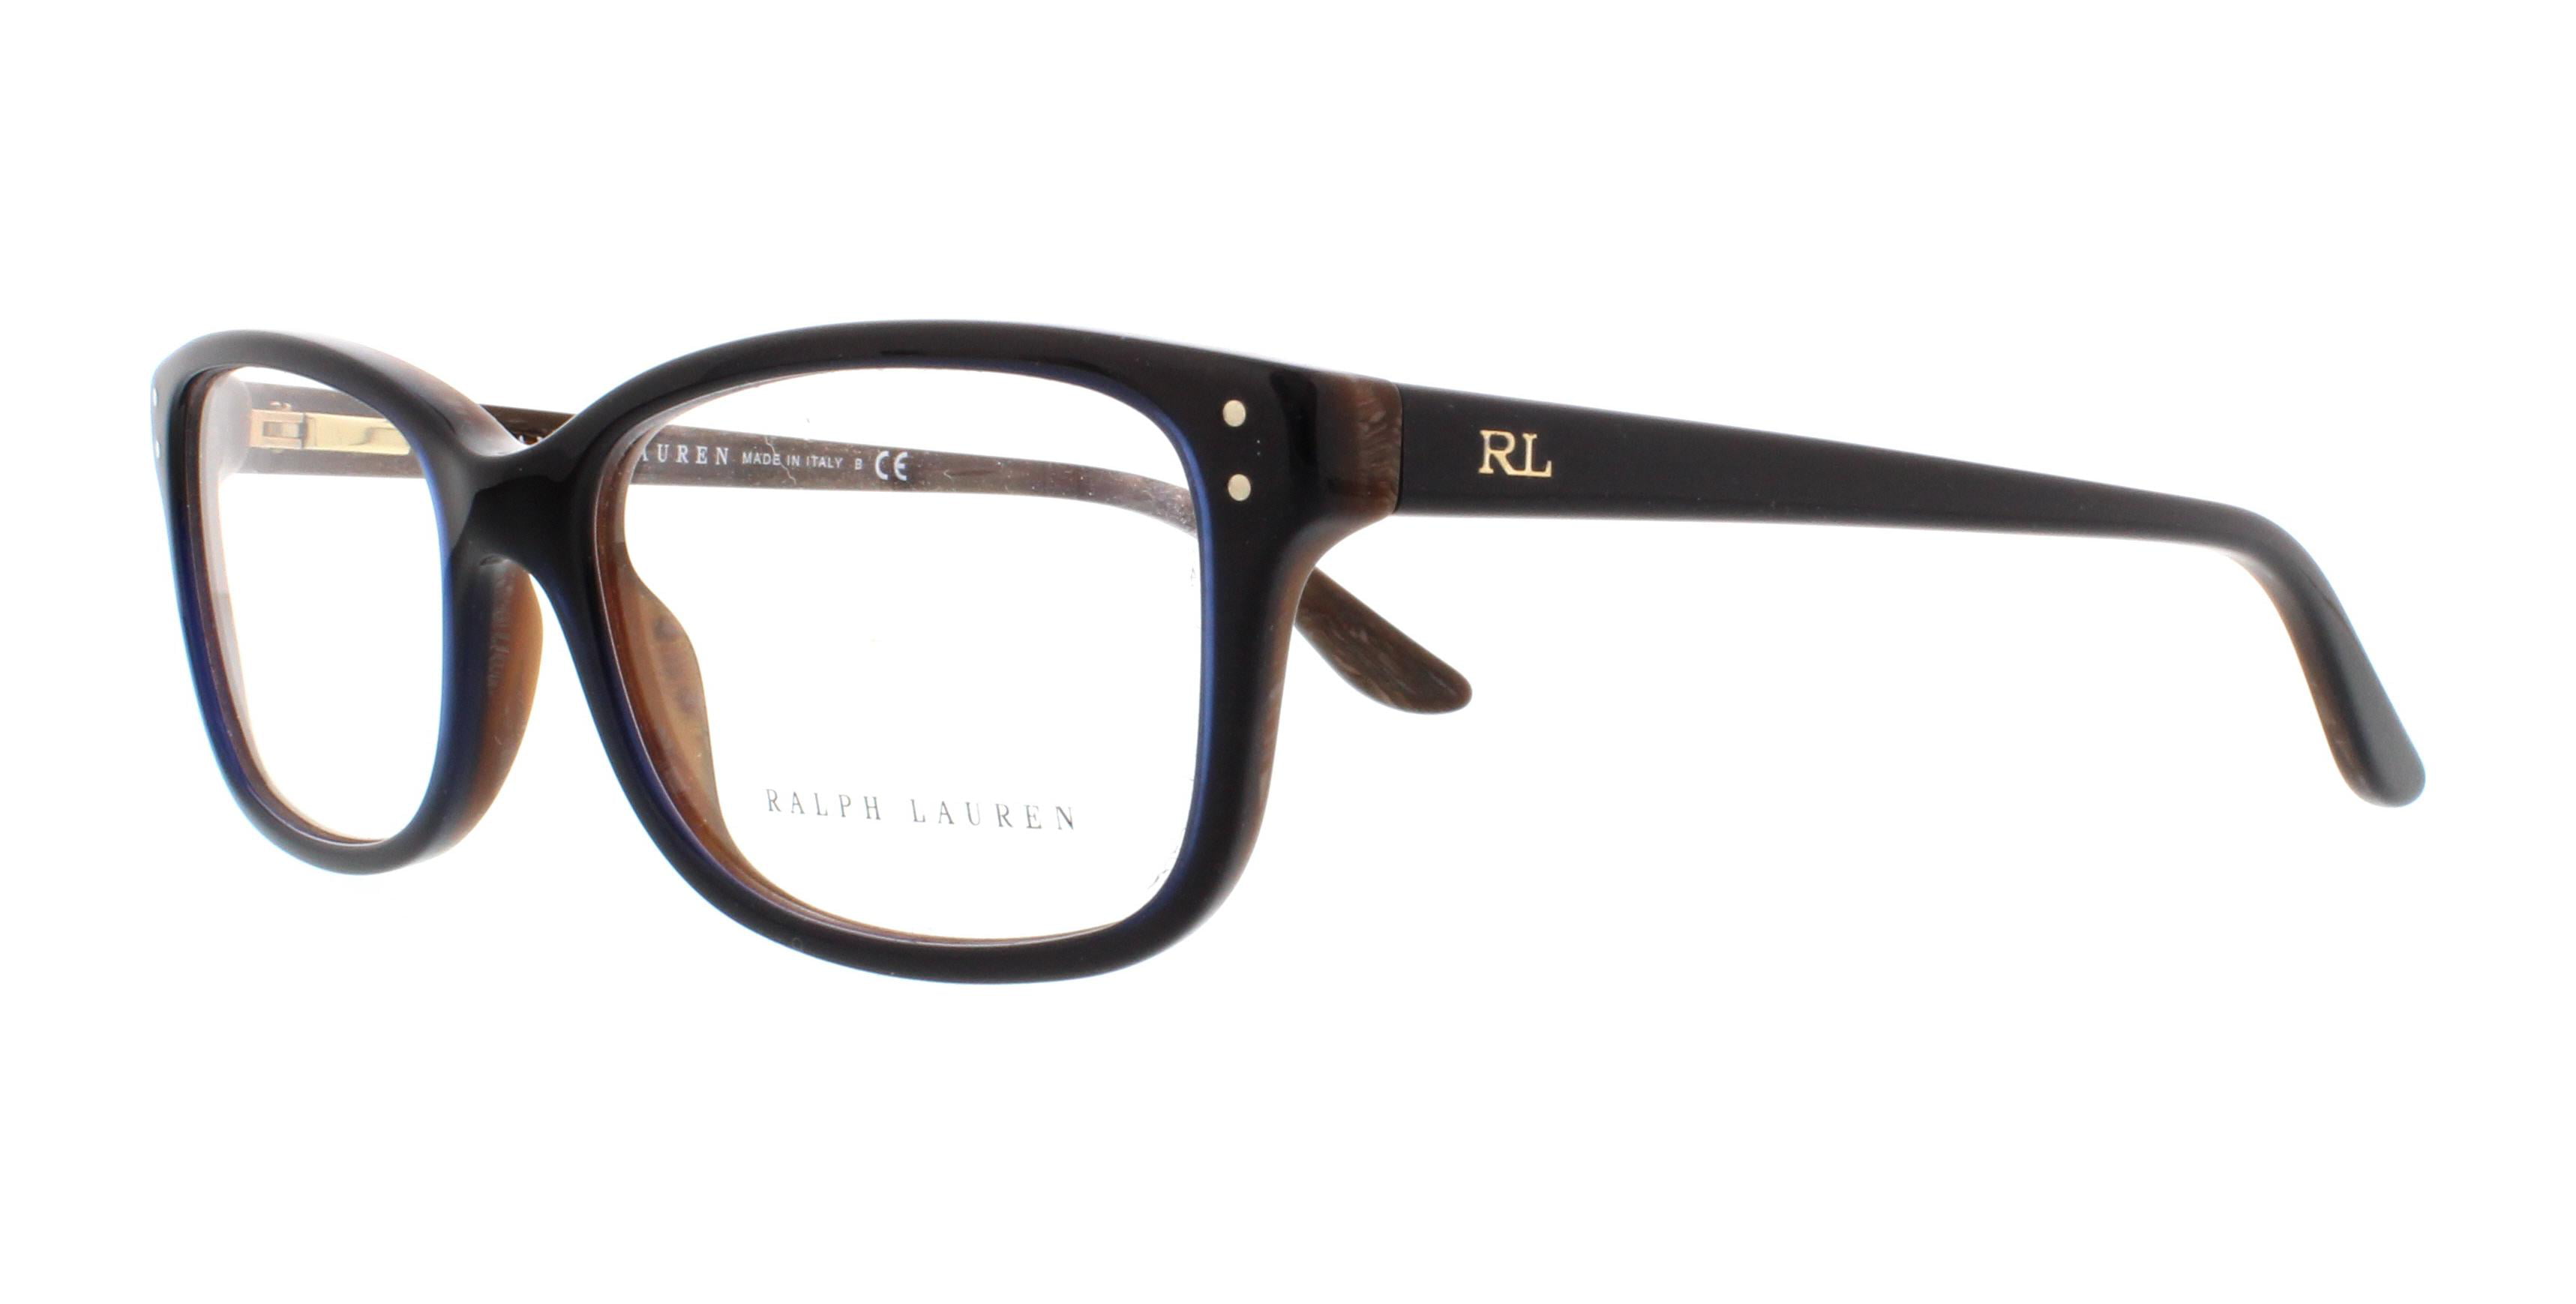 RALPH LAUREN Eyeglasses RL6062 5150 Top Blue/Horn 52MM - Walmart.com